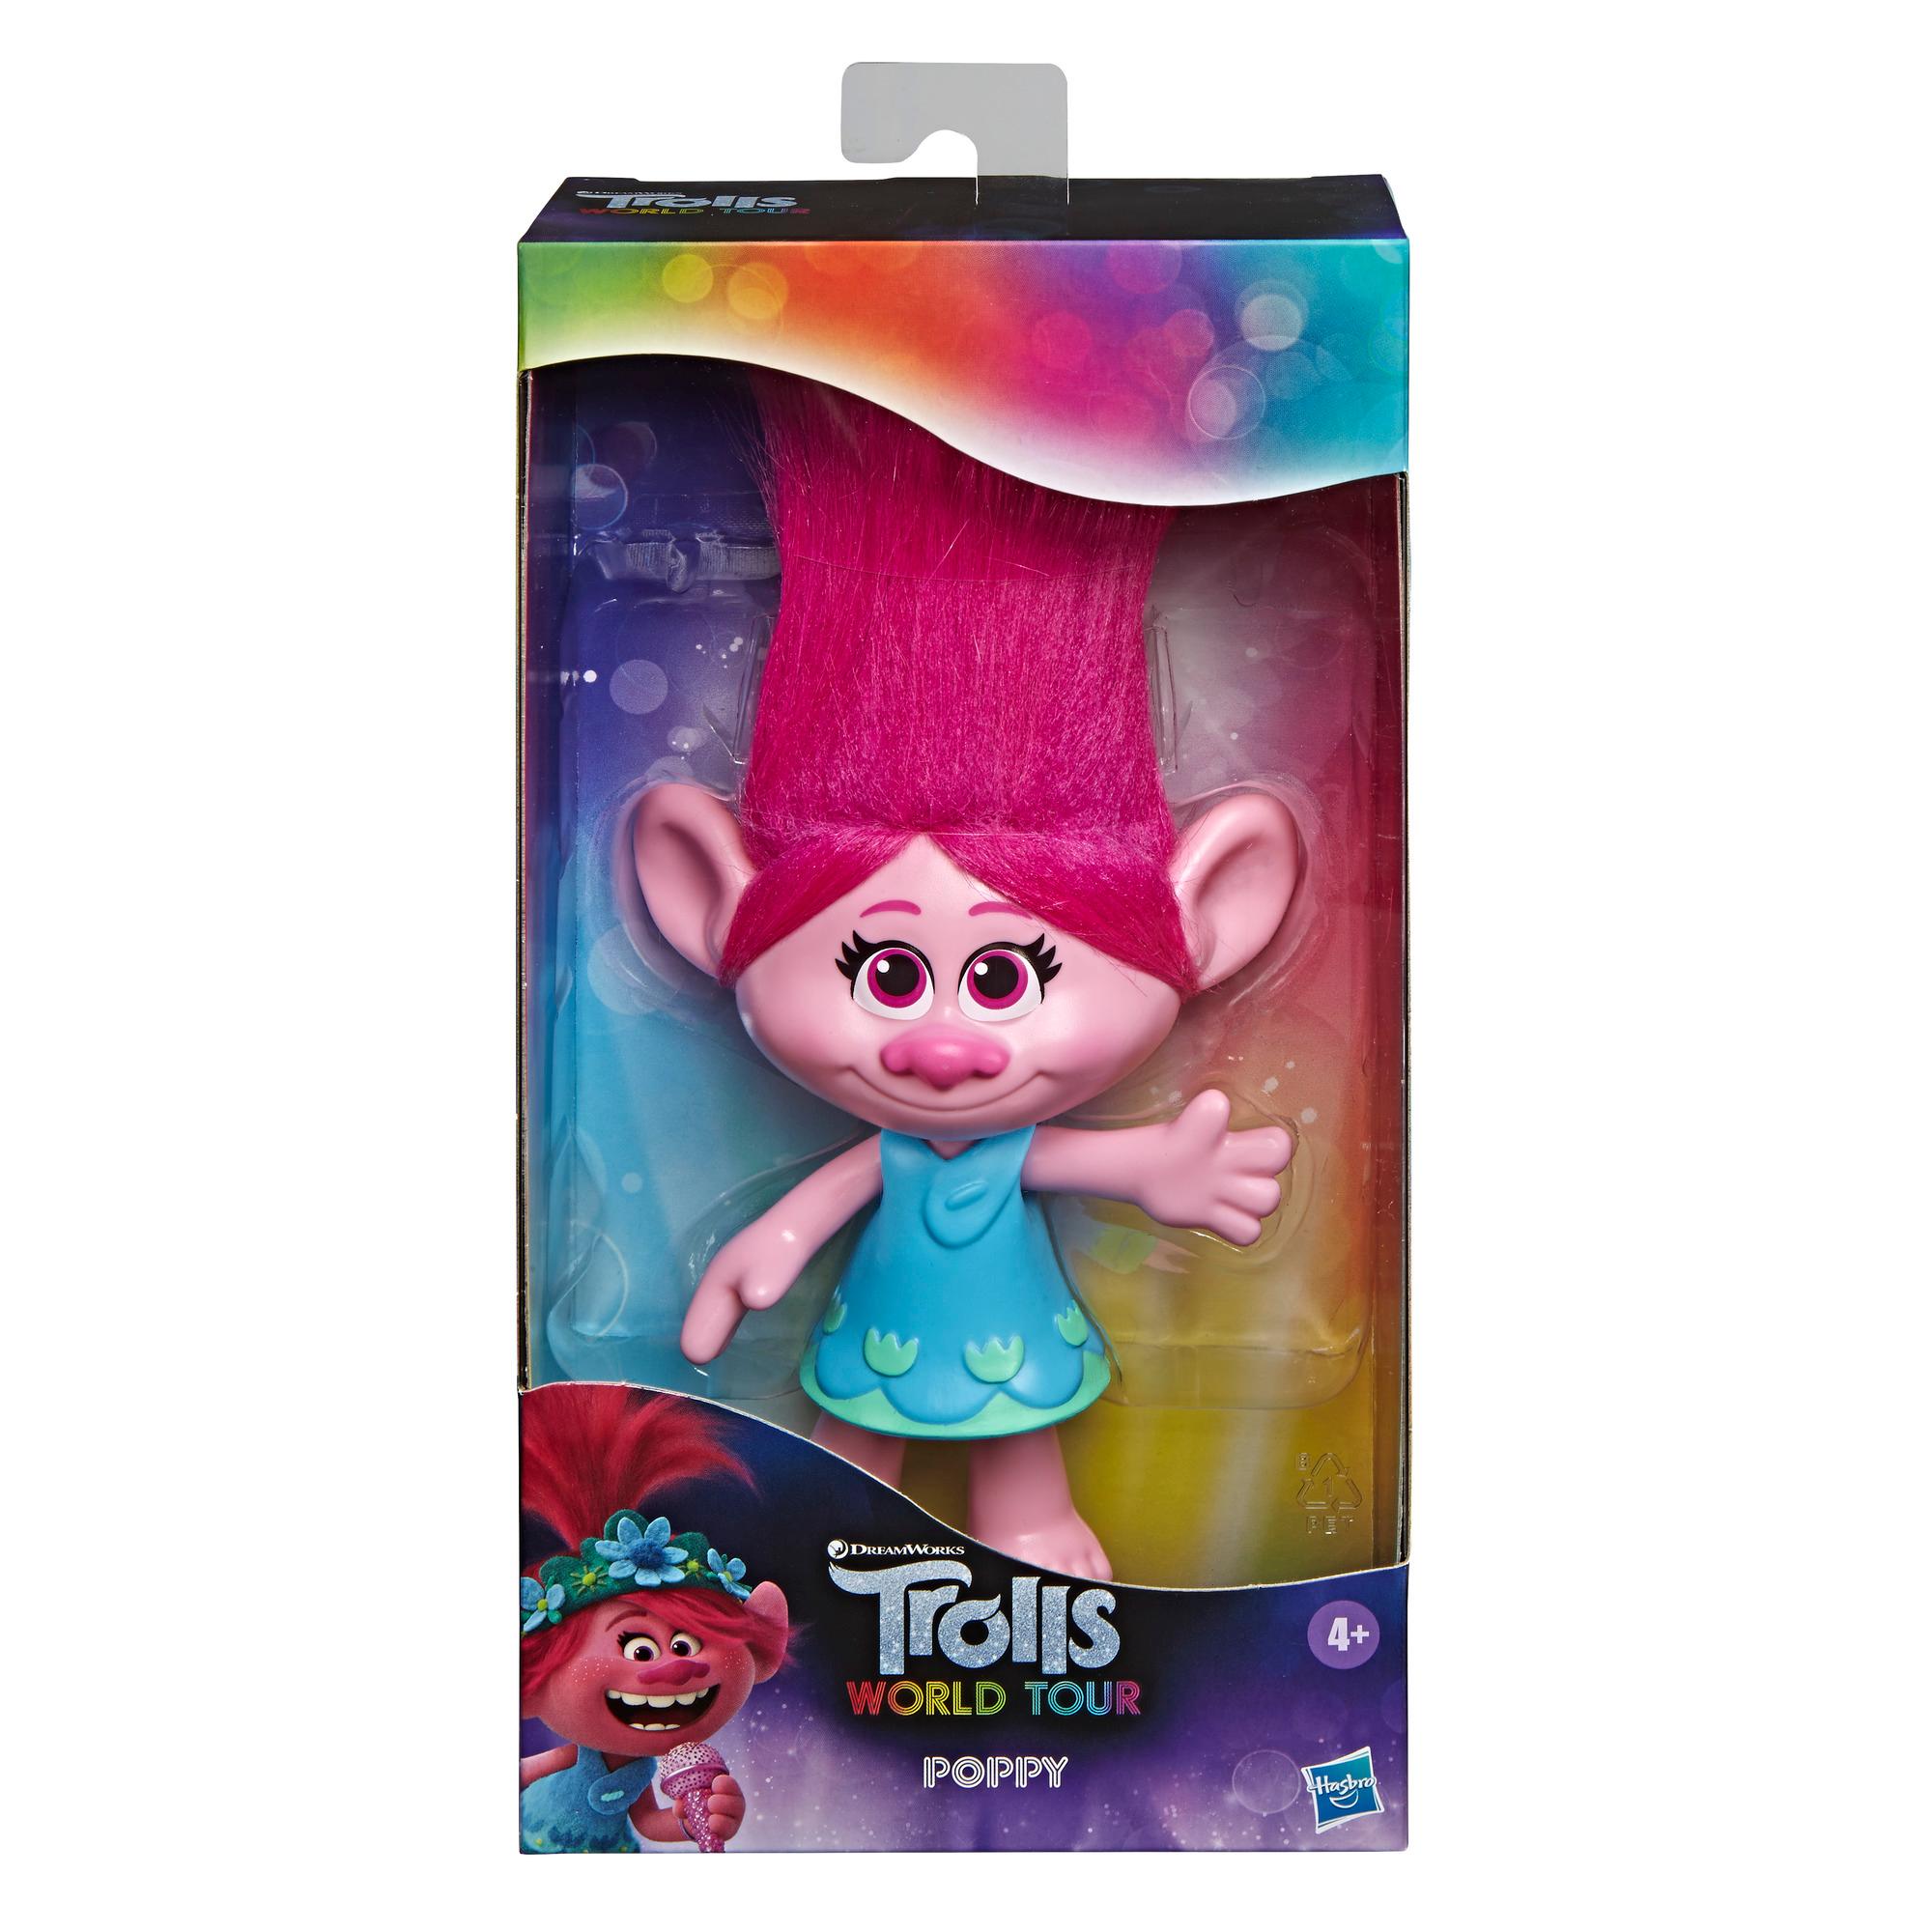 Les Trolls de DreamWorks - Poupée Poppy avec robe amovible, inspirée de Trolls World Tour, jouet pour enfants, à partir de 4 ans